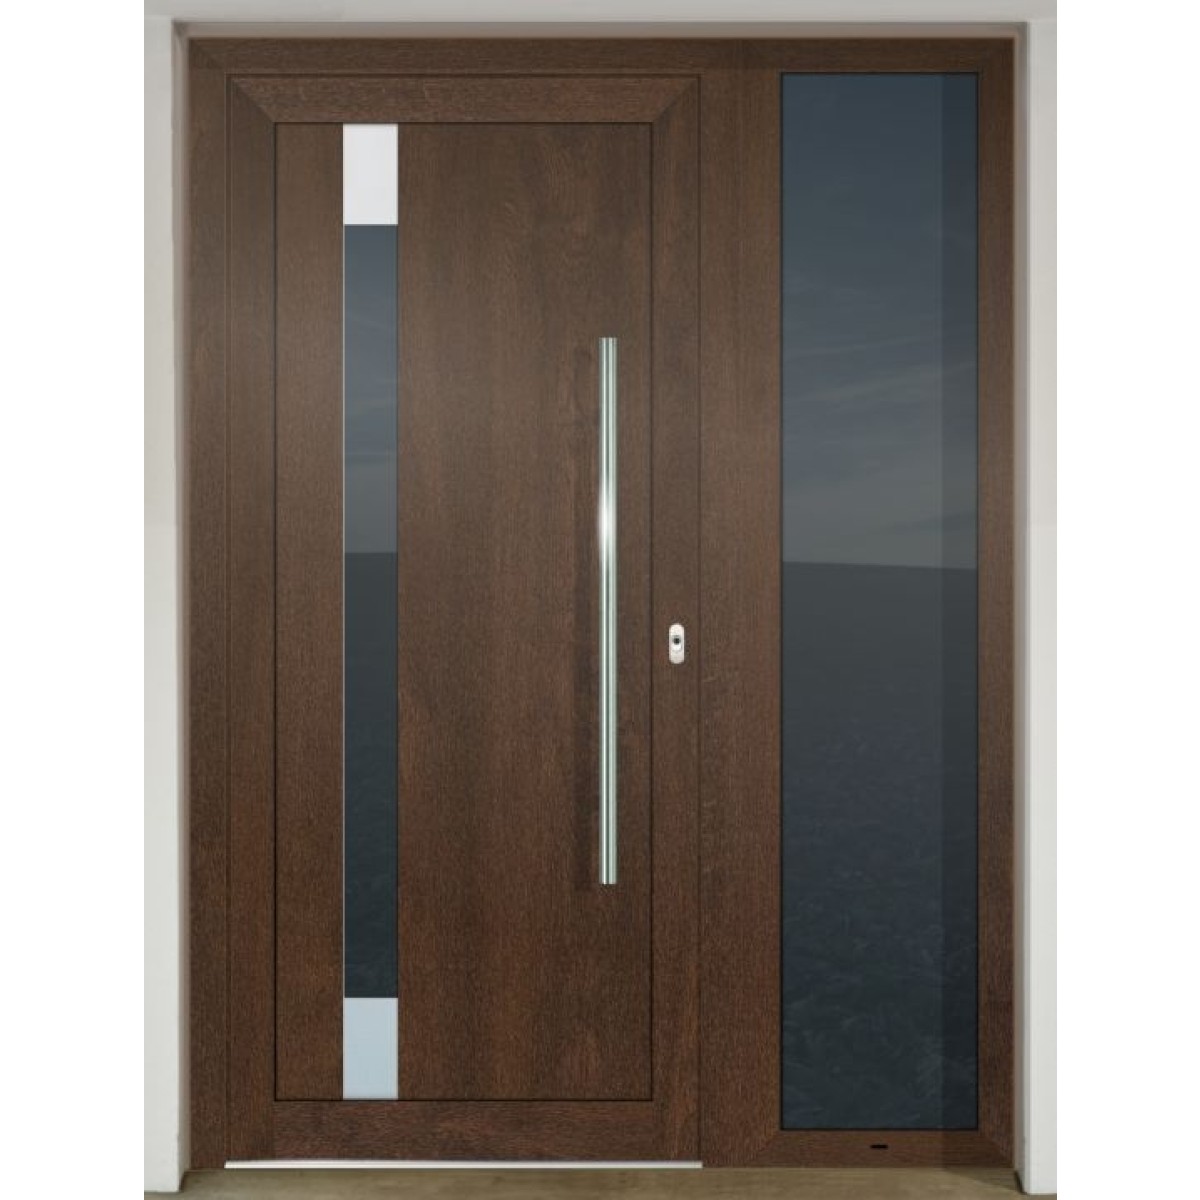 Gava HPL 990 Nussbaum - entrance door